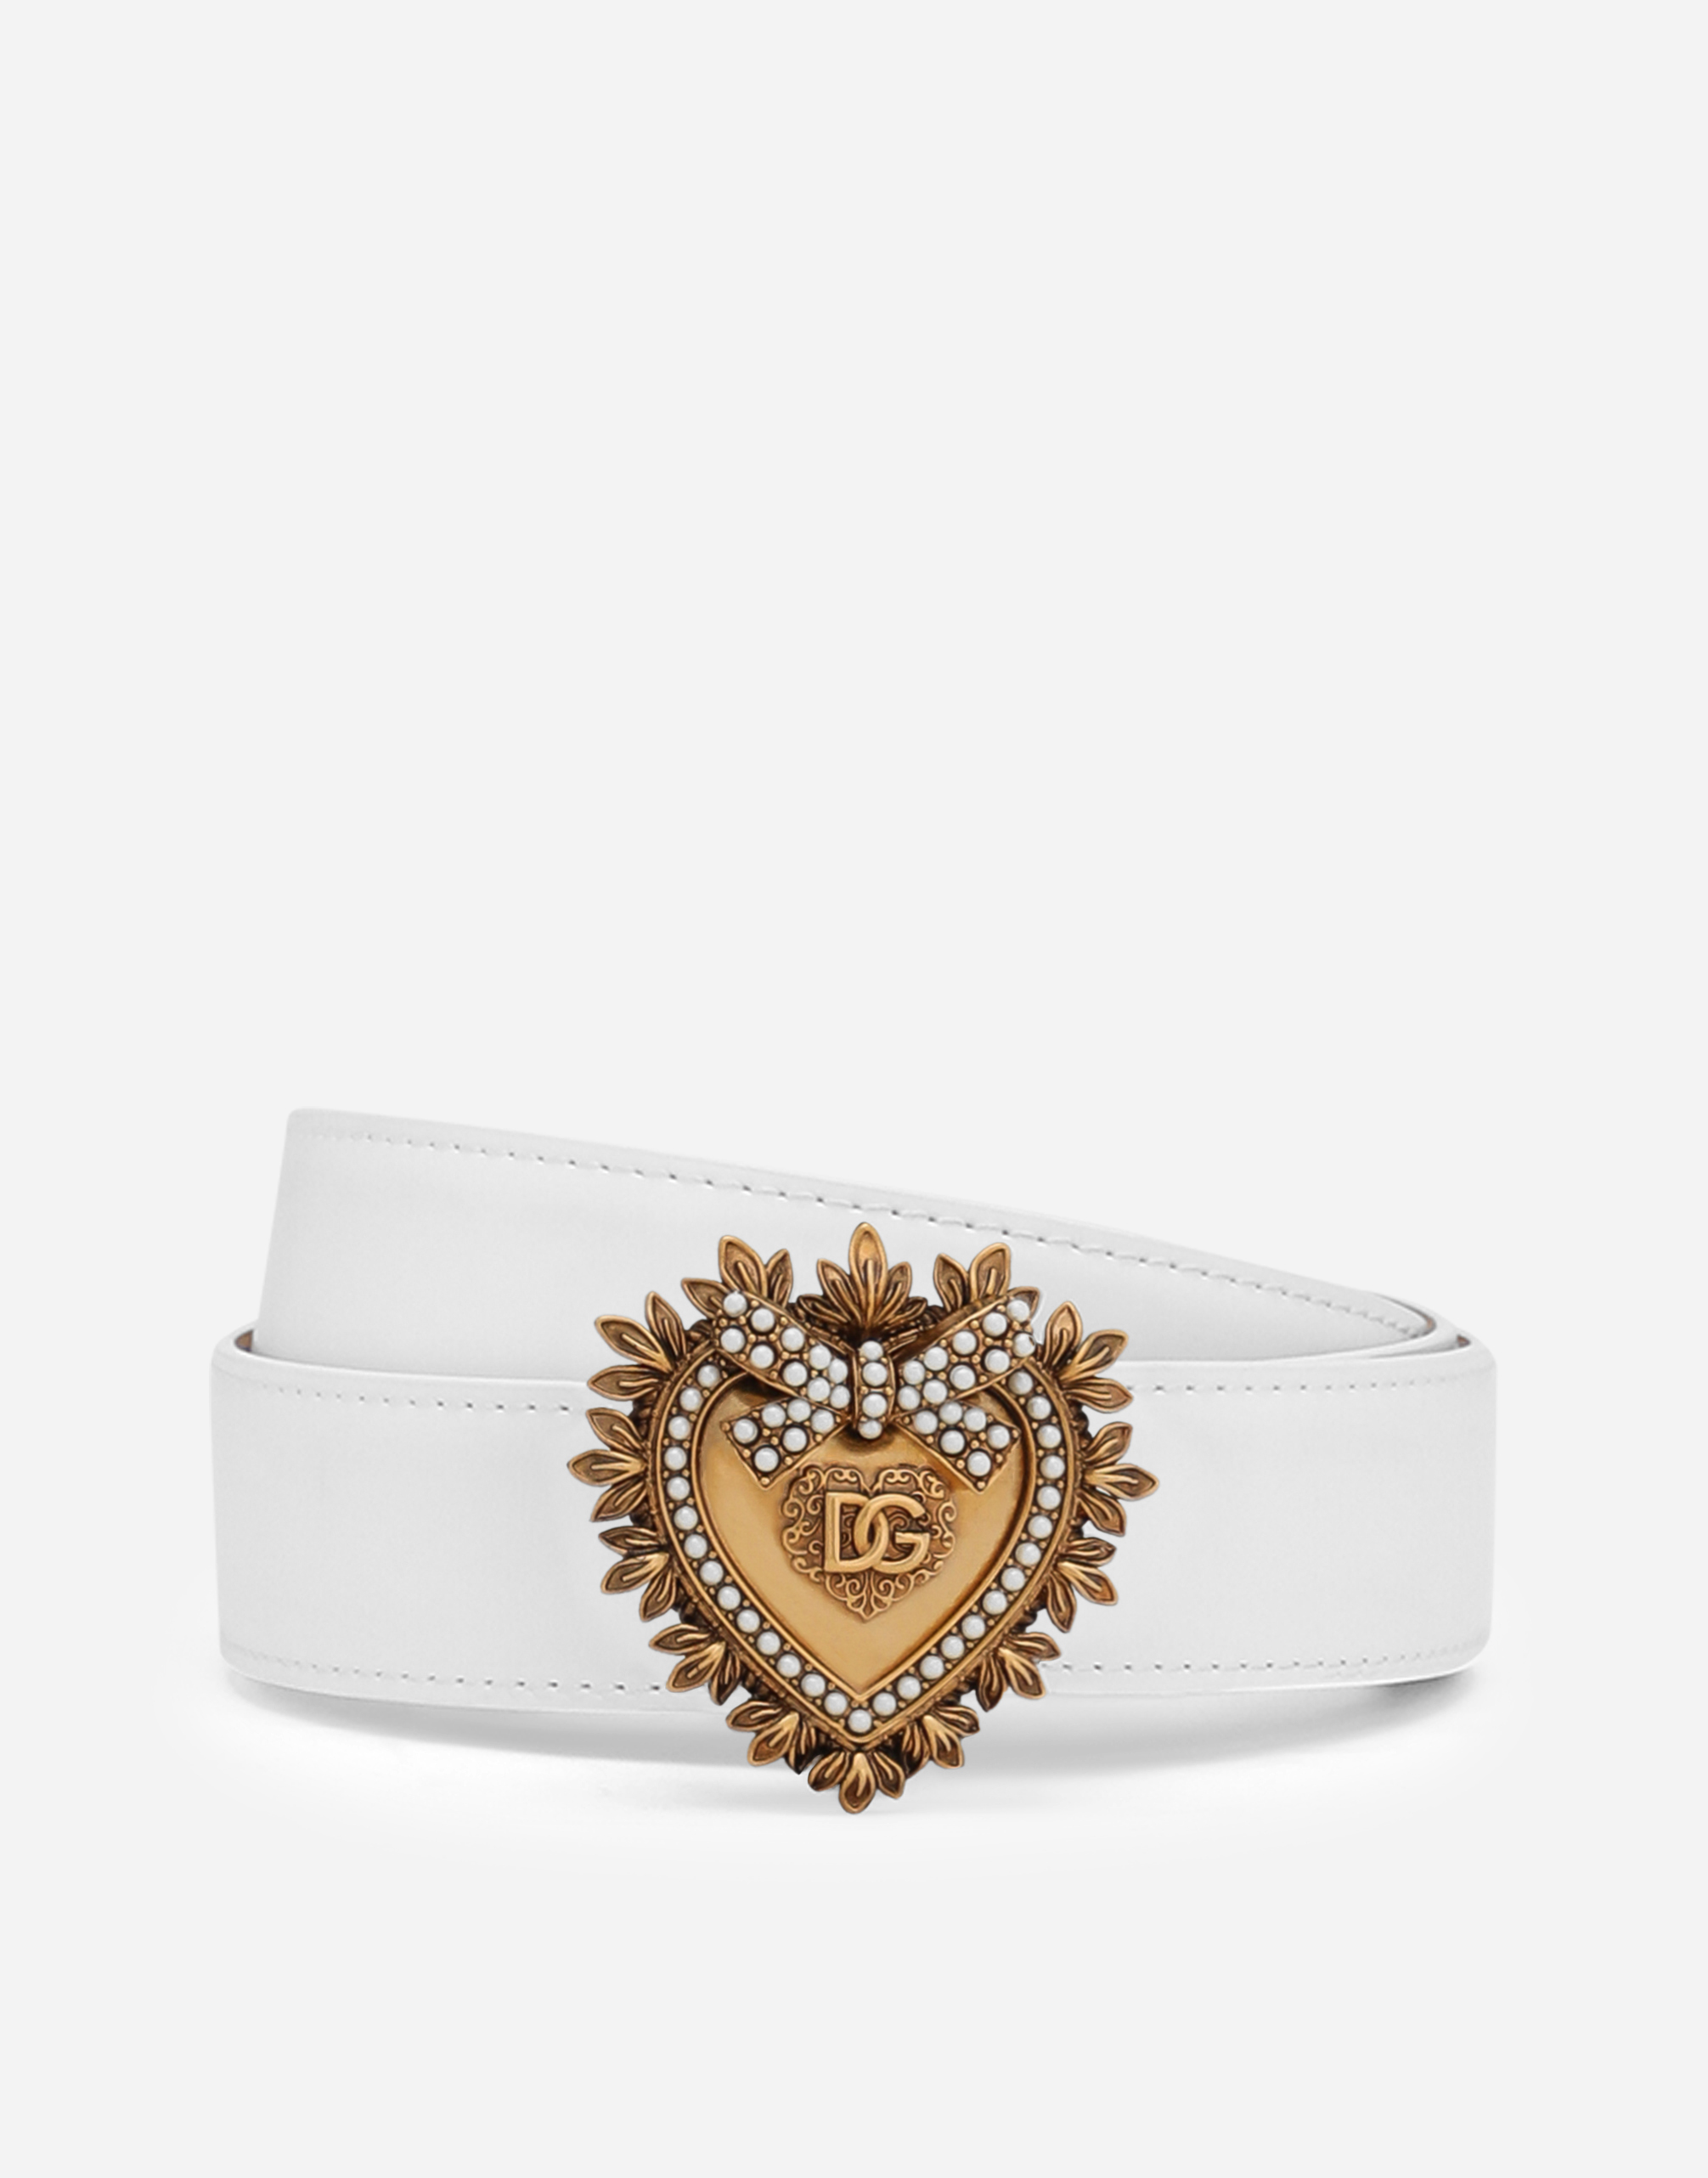 Luxury leather Devotion belt in White